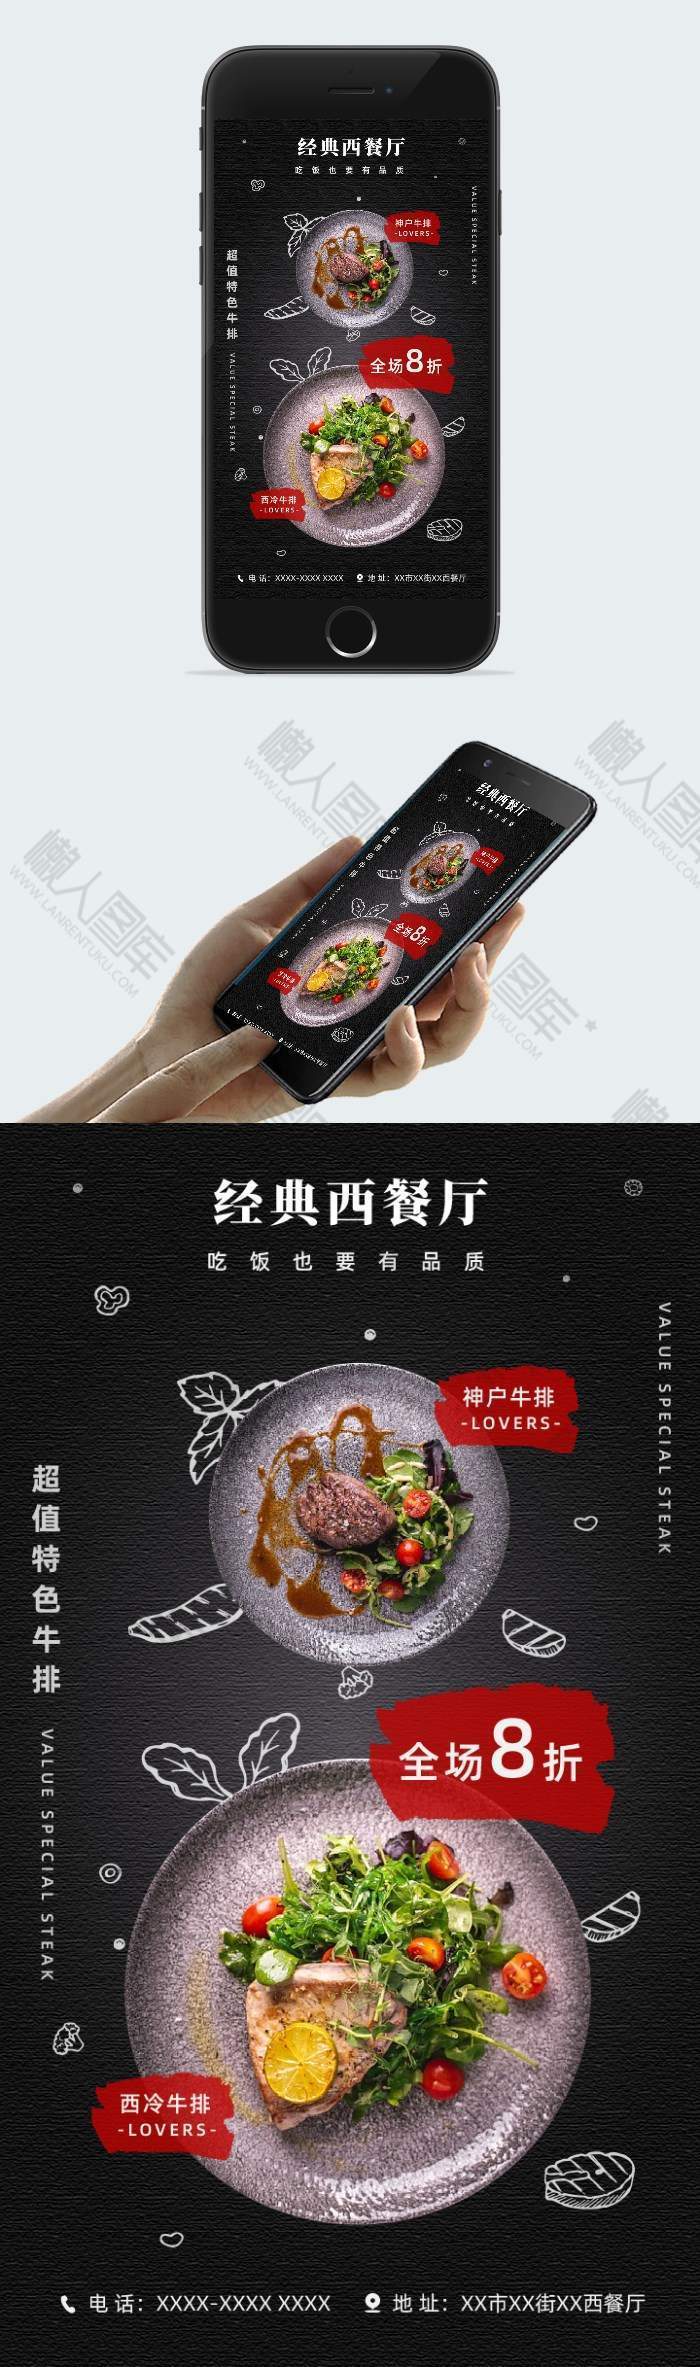 西餐厅牛排宣传插画配图手机海报